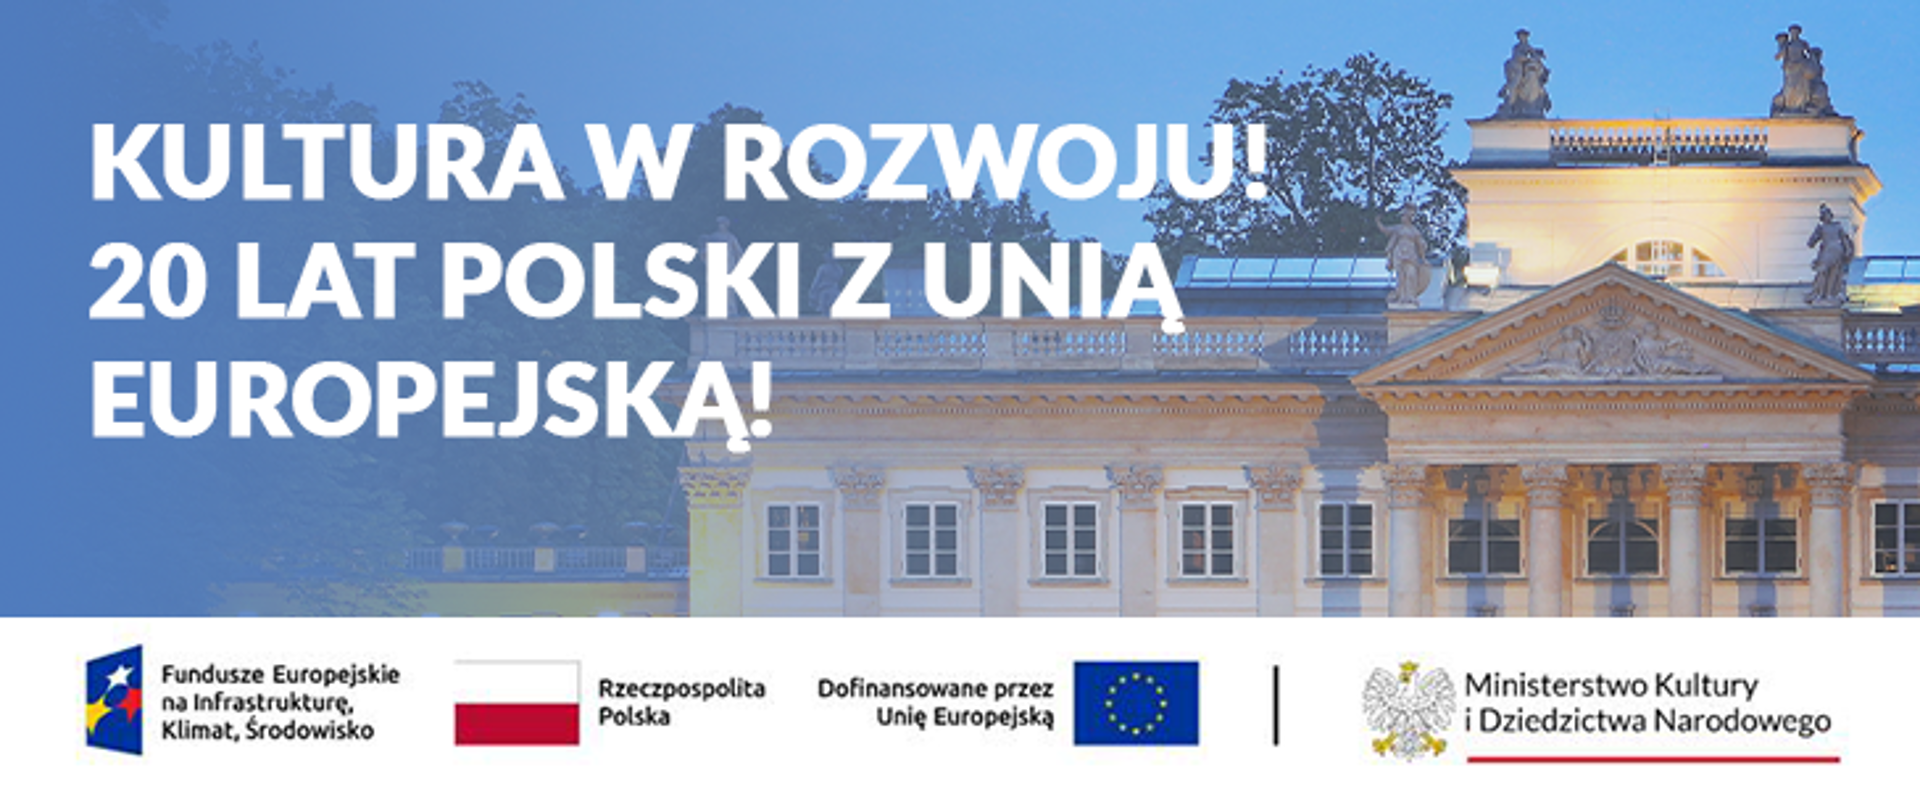 Kultura w rozwoju! 20 lat Polski z UE!